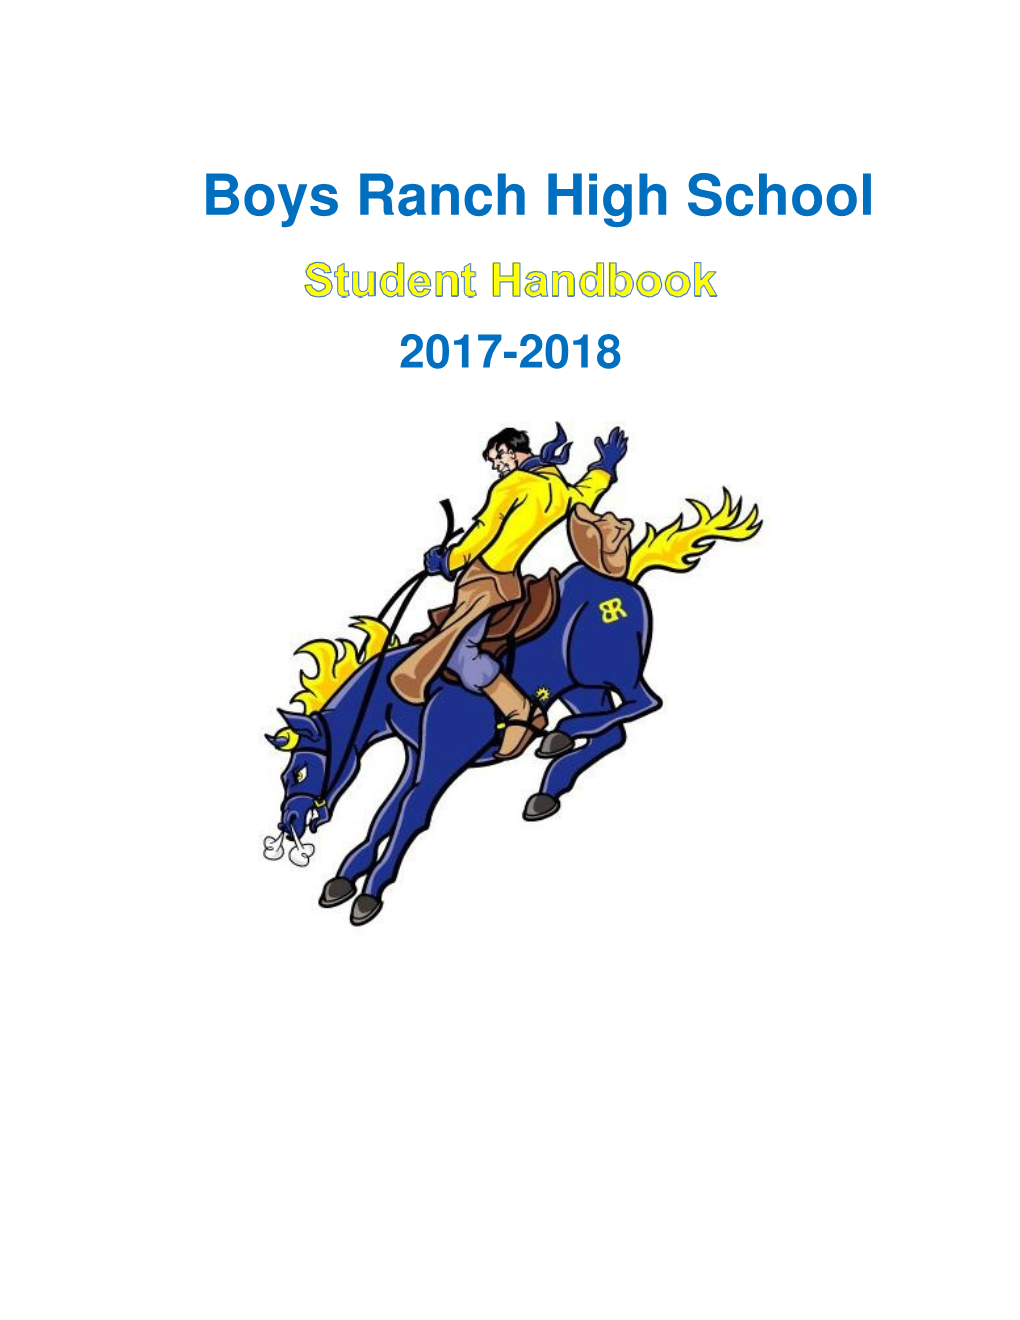 Boys Ranch High School